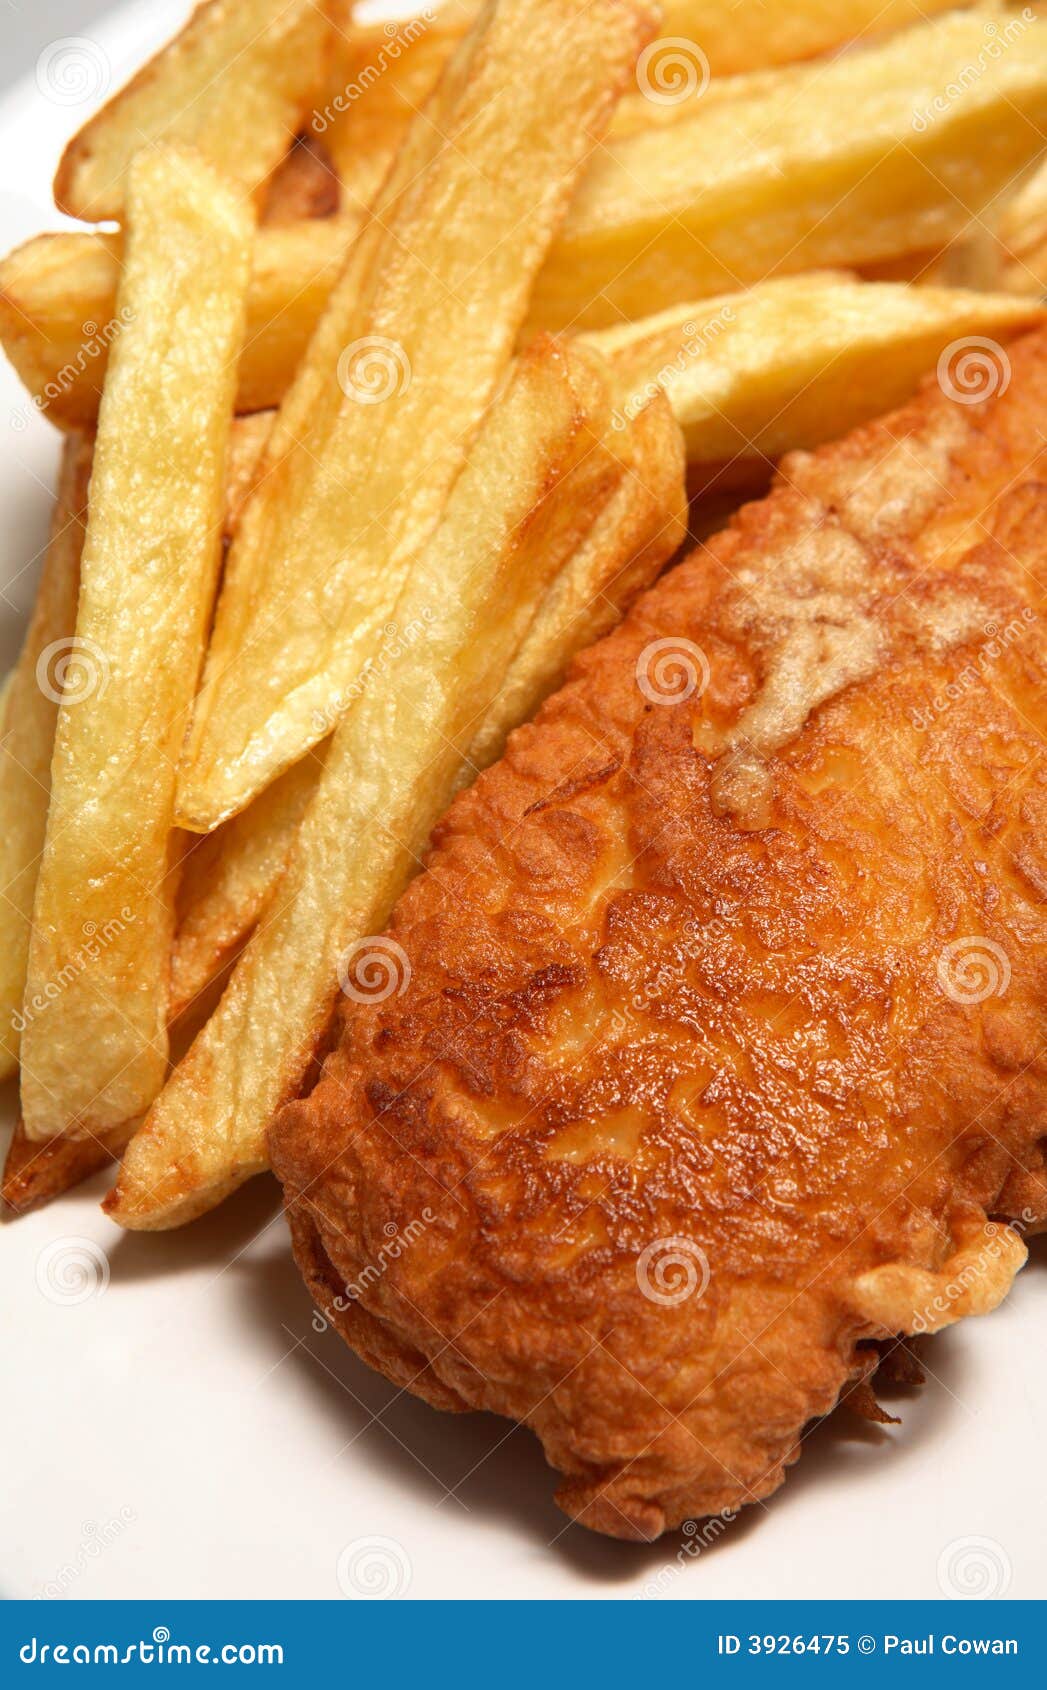 Chip kolację smażonej ryby. Chipsy są łowią francuskie frytki anglików do domu, walcowane tradycyjnego.